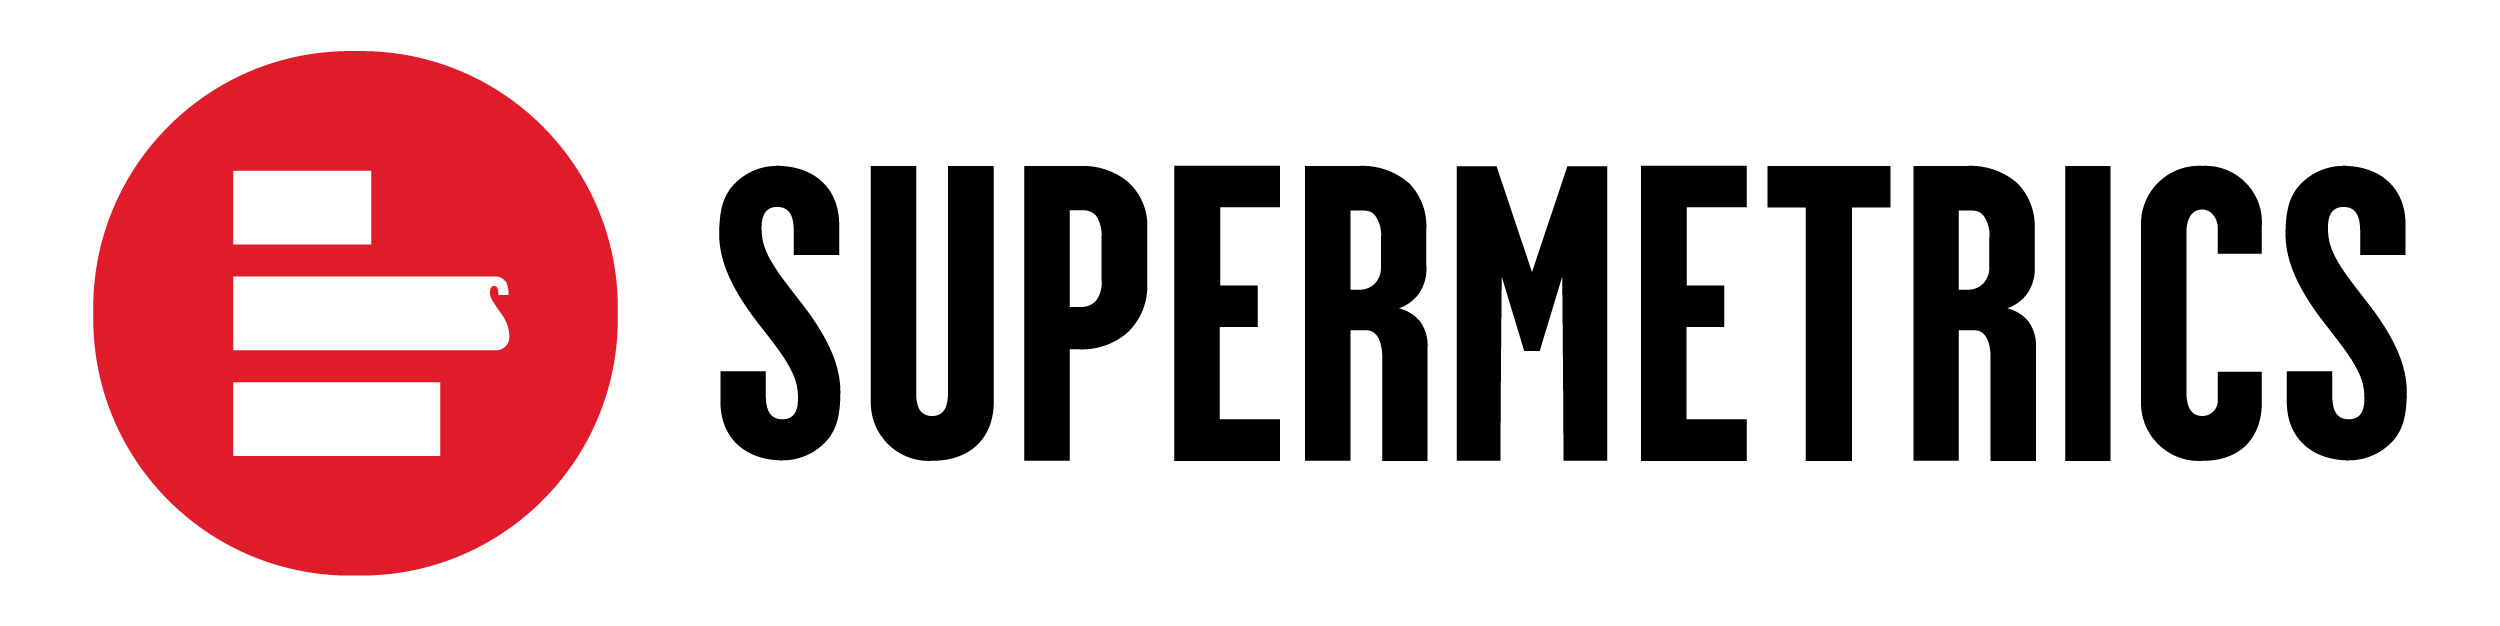 Supermetrics-logo-black